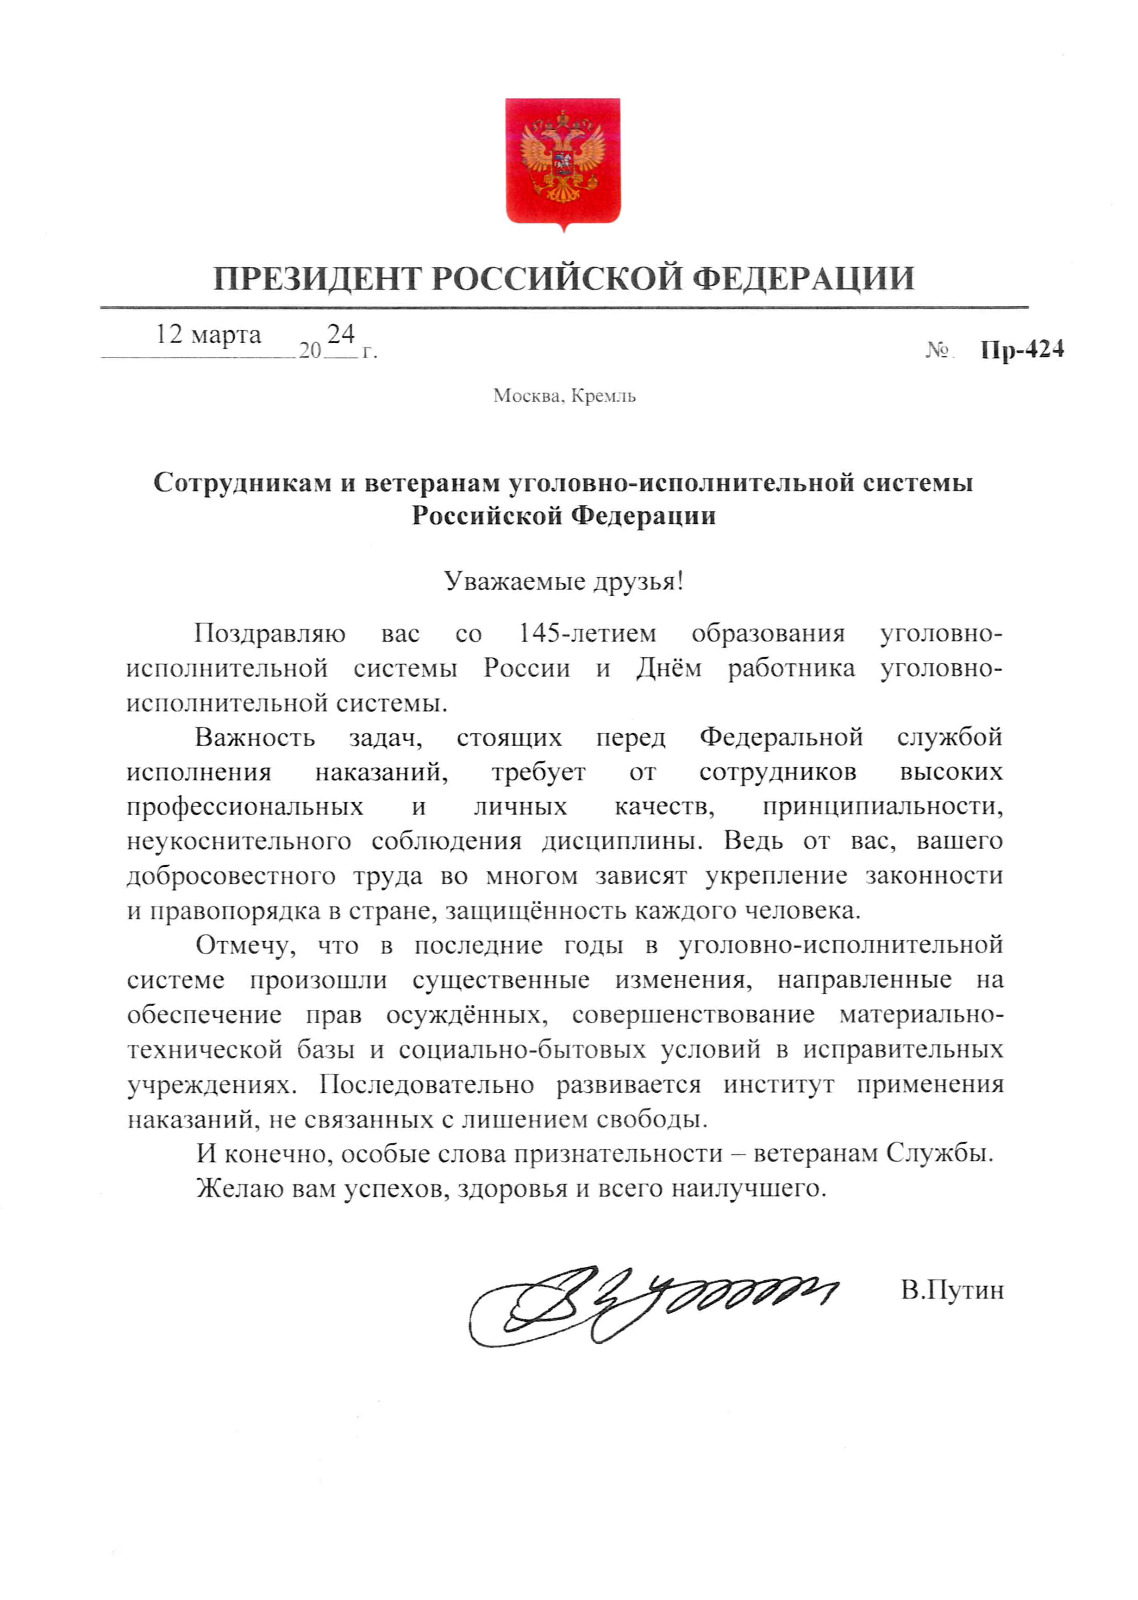 Поздравление Президента РФ работников УИС со 145-летием образования системы